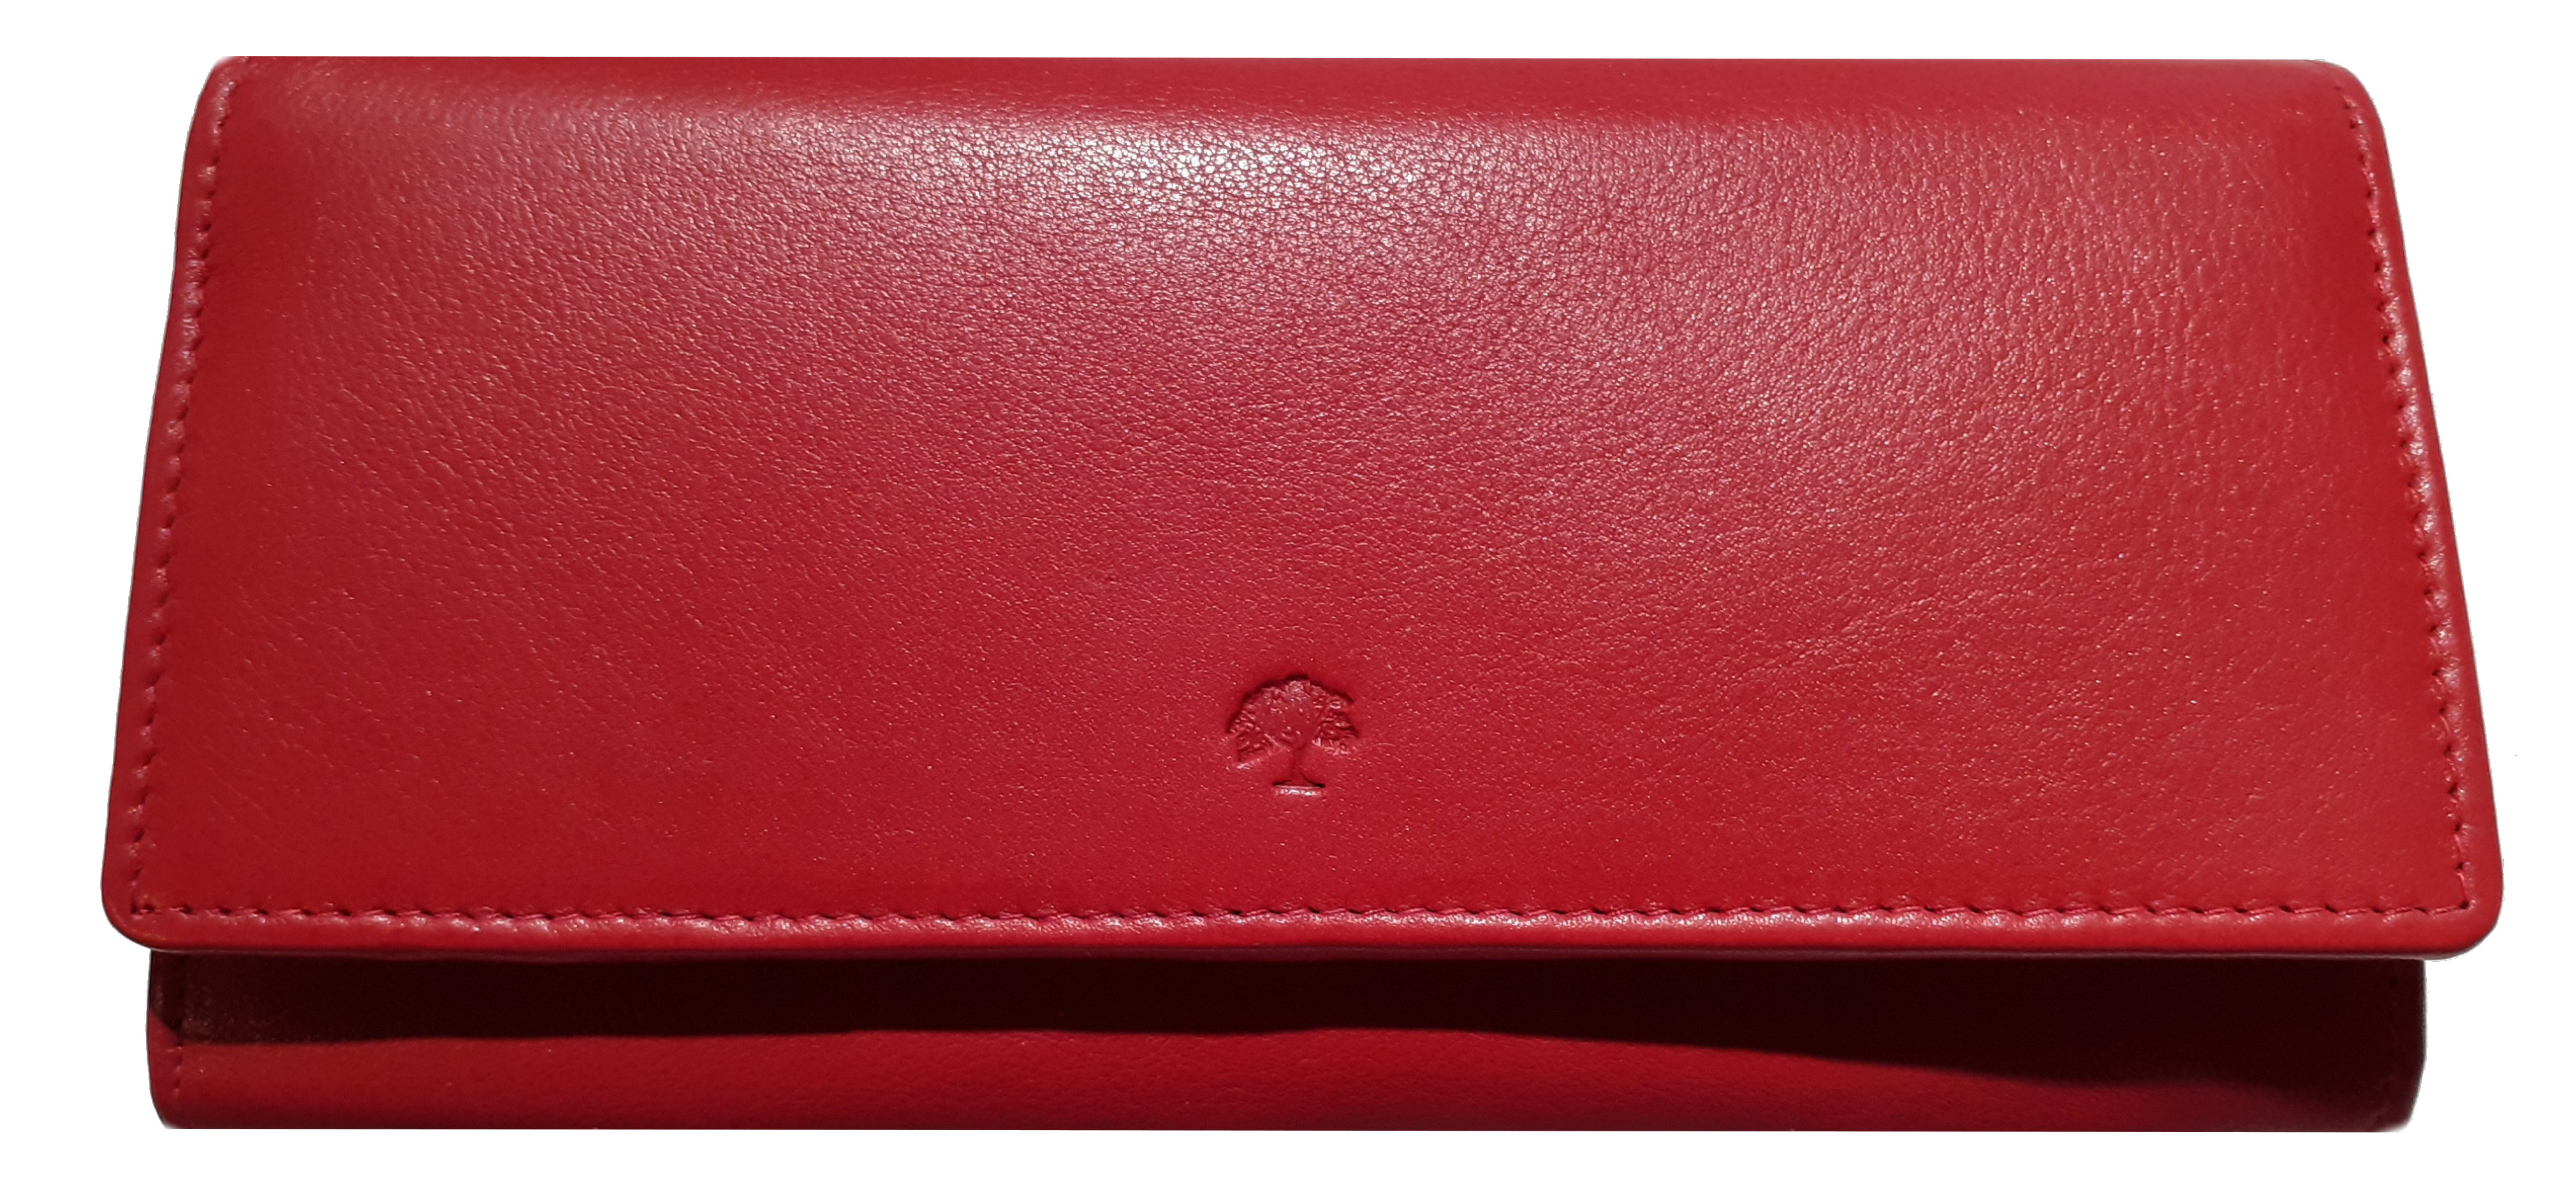 Prato 'LM Shahid' Überschlagbörse RFID-Schutz echt Leder rot